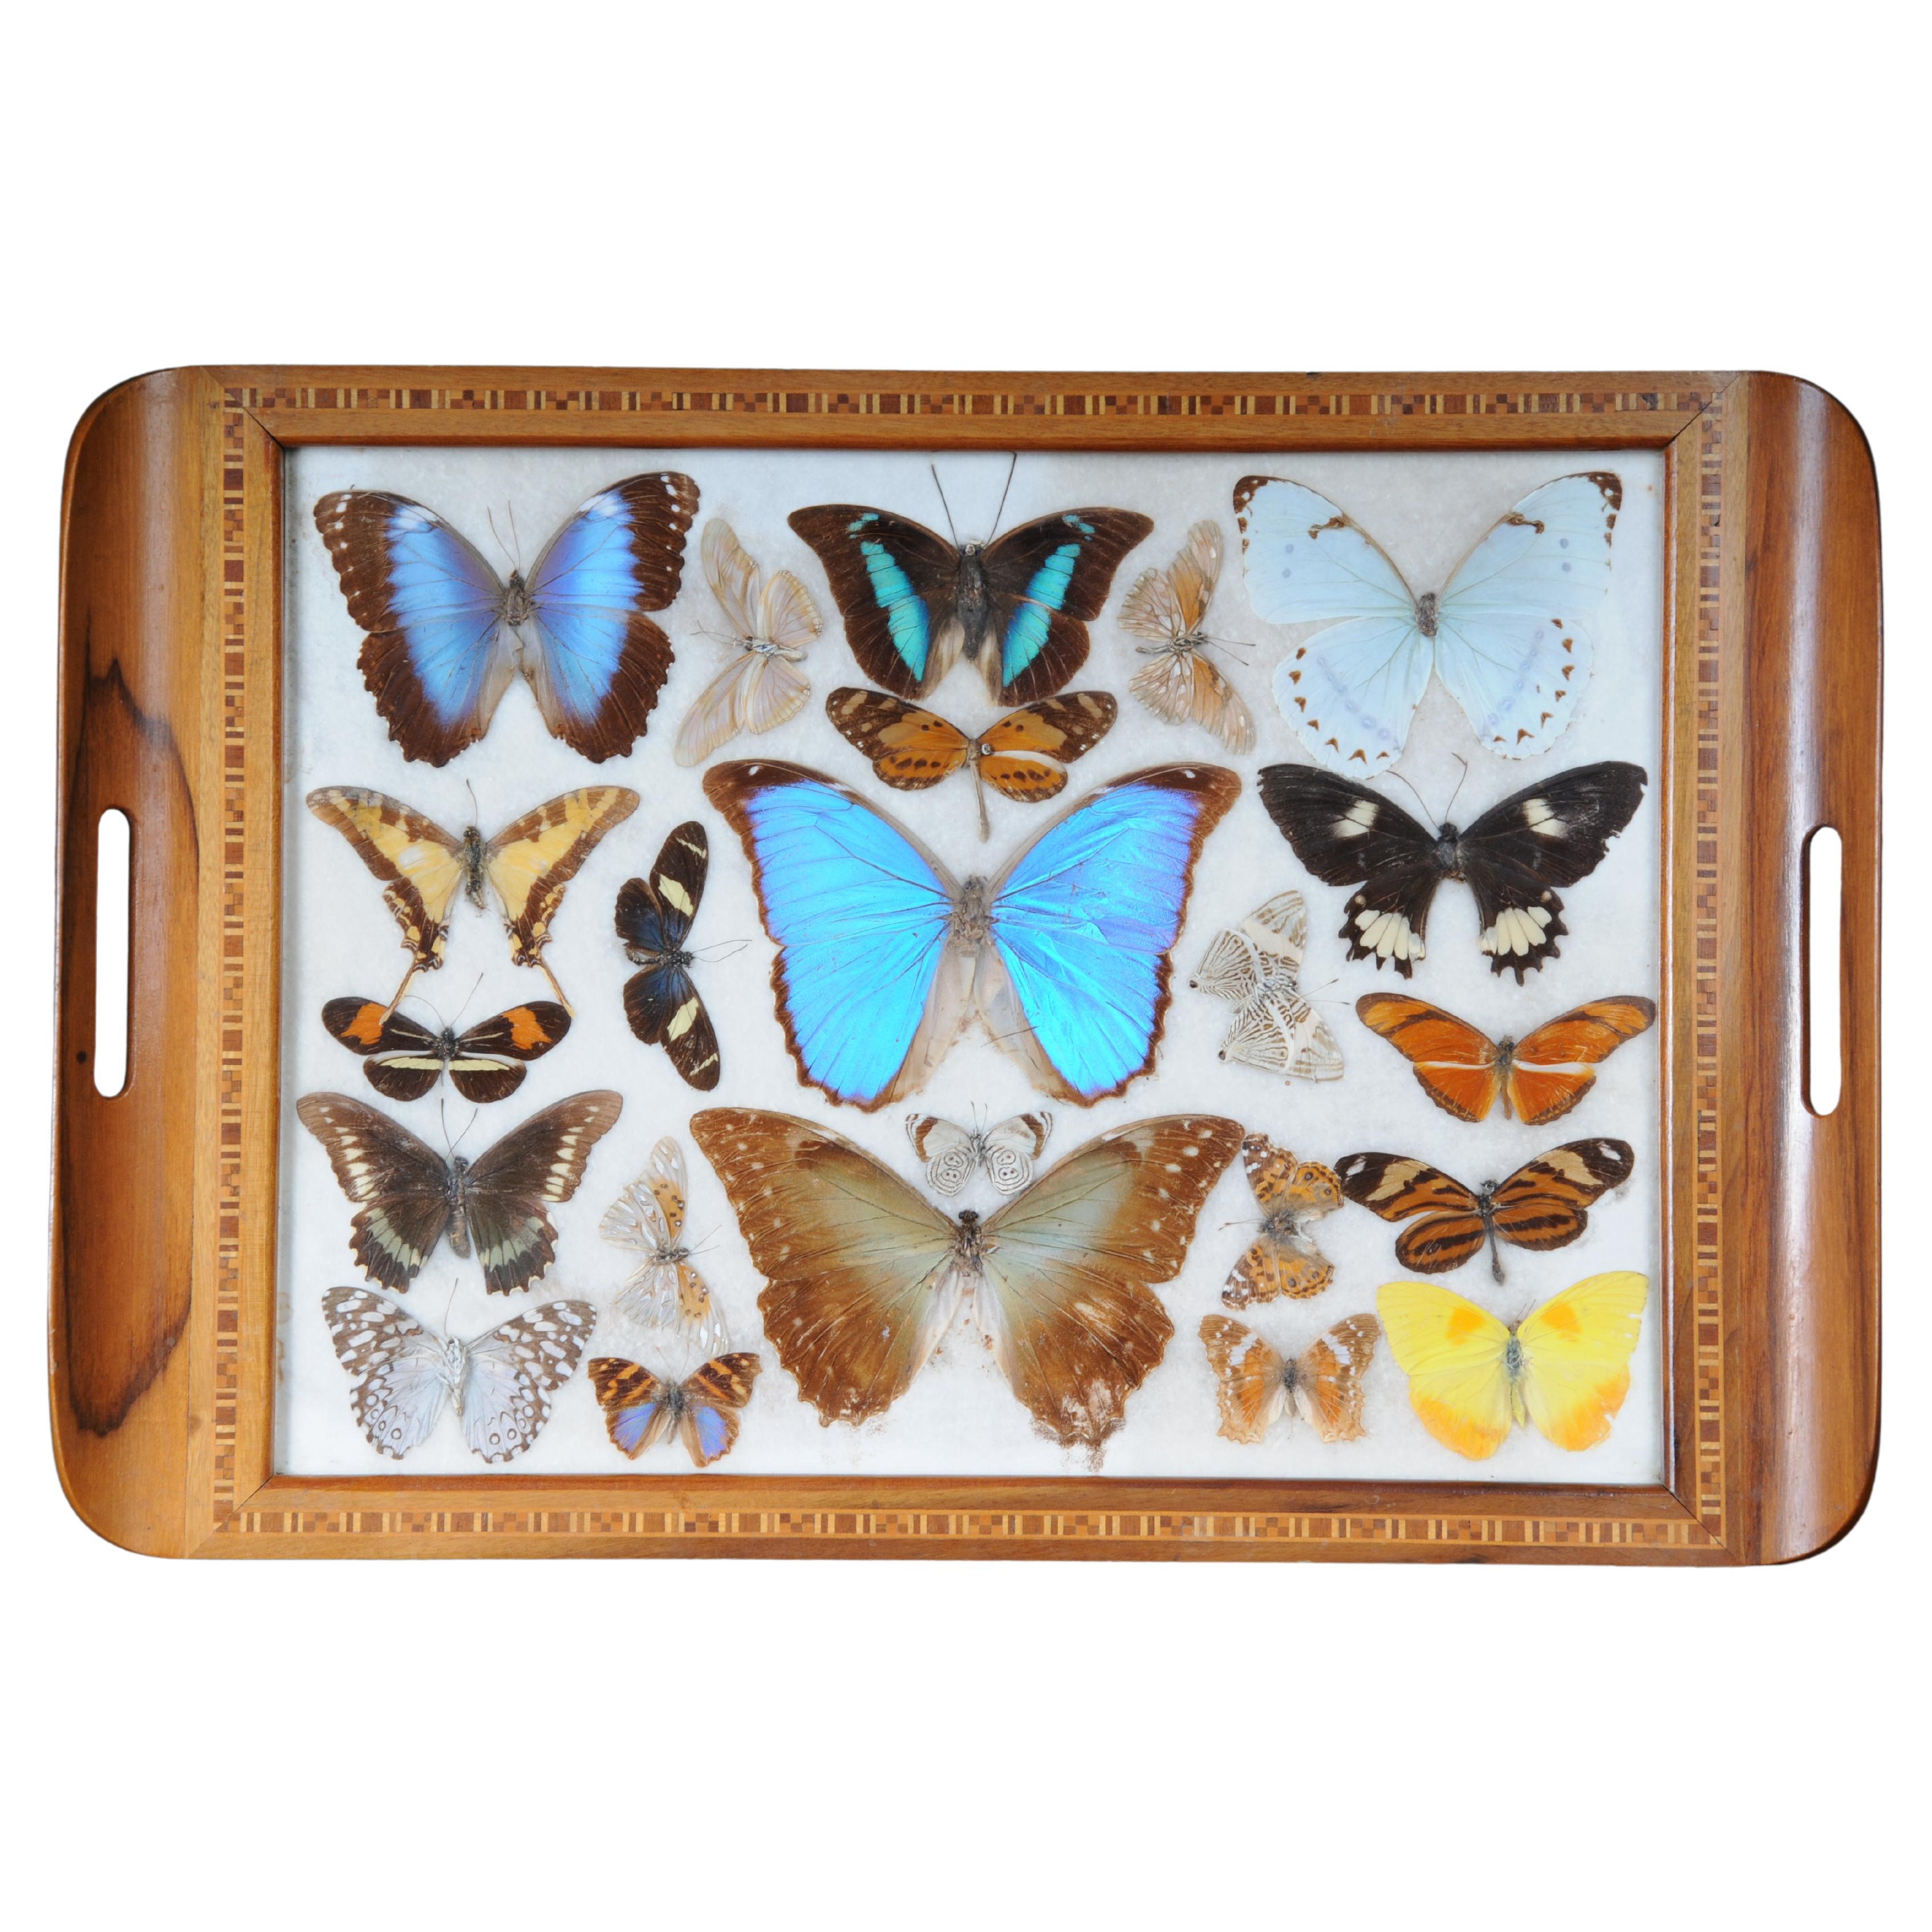 Curious Antikes Tablett mit echten Schmetterlingsexemplaren. Sehr selten im Angebot